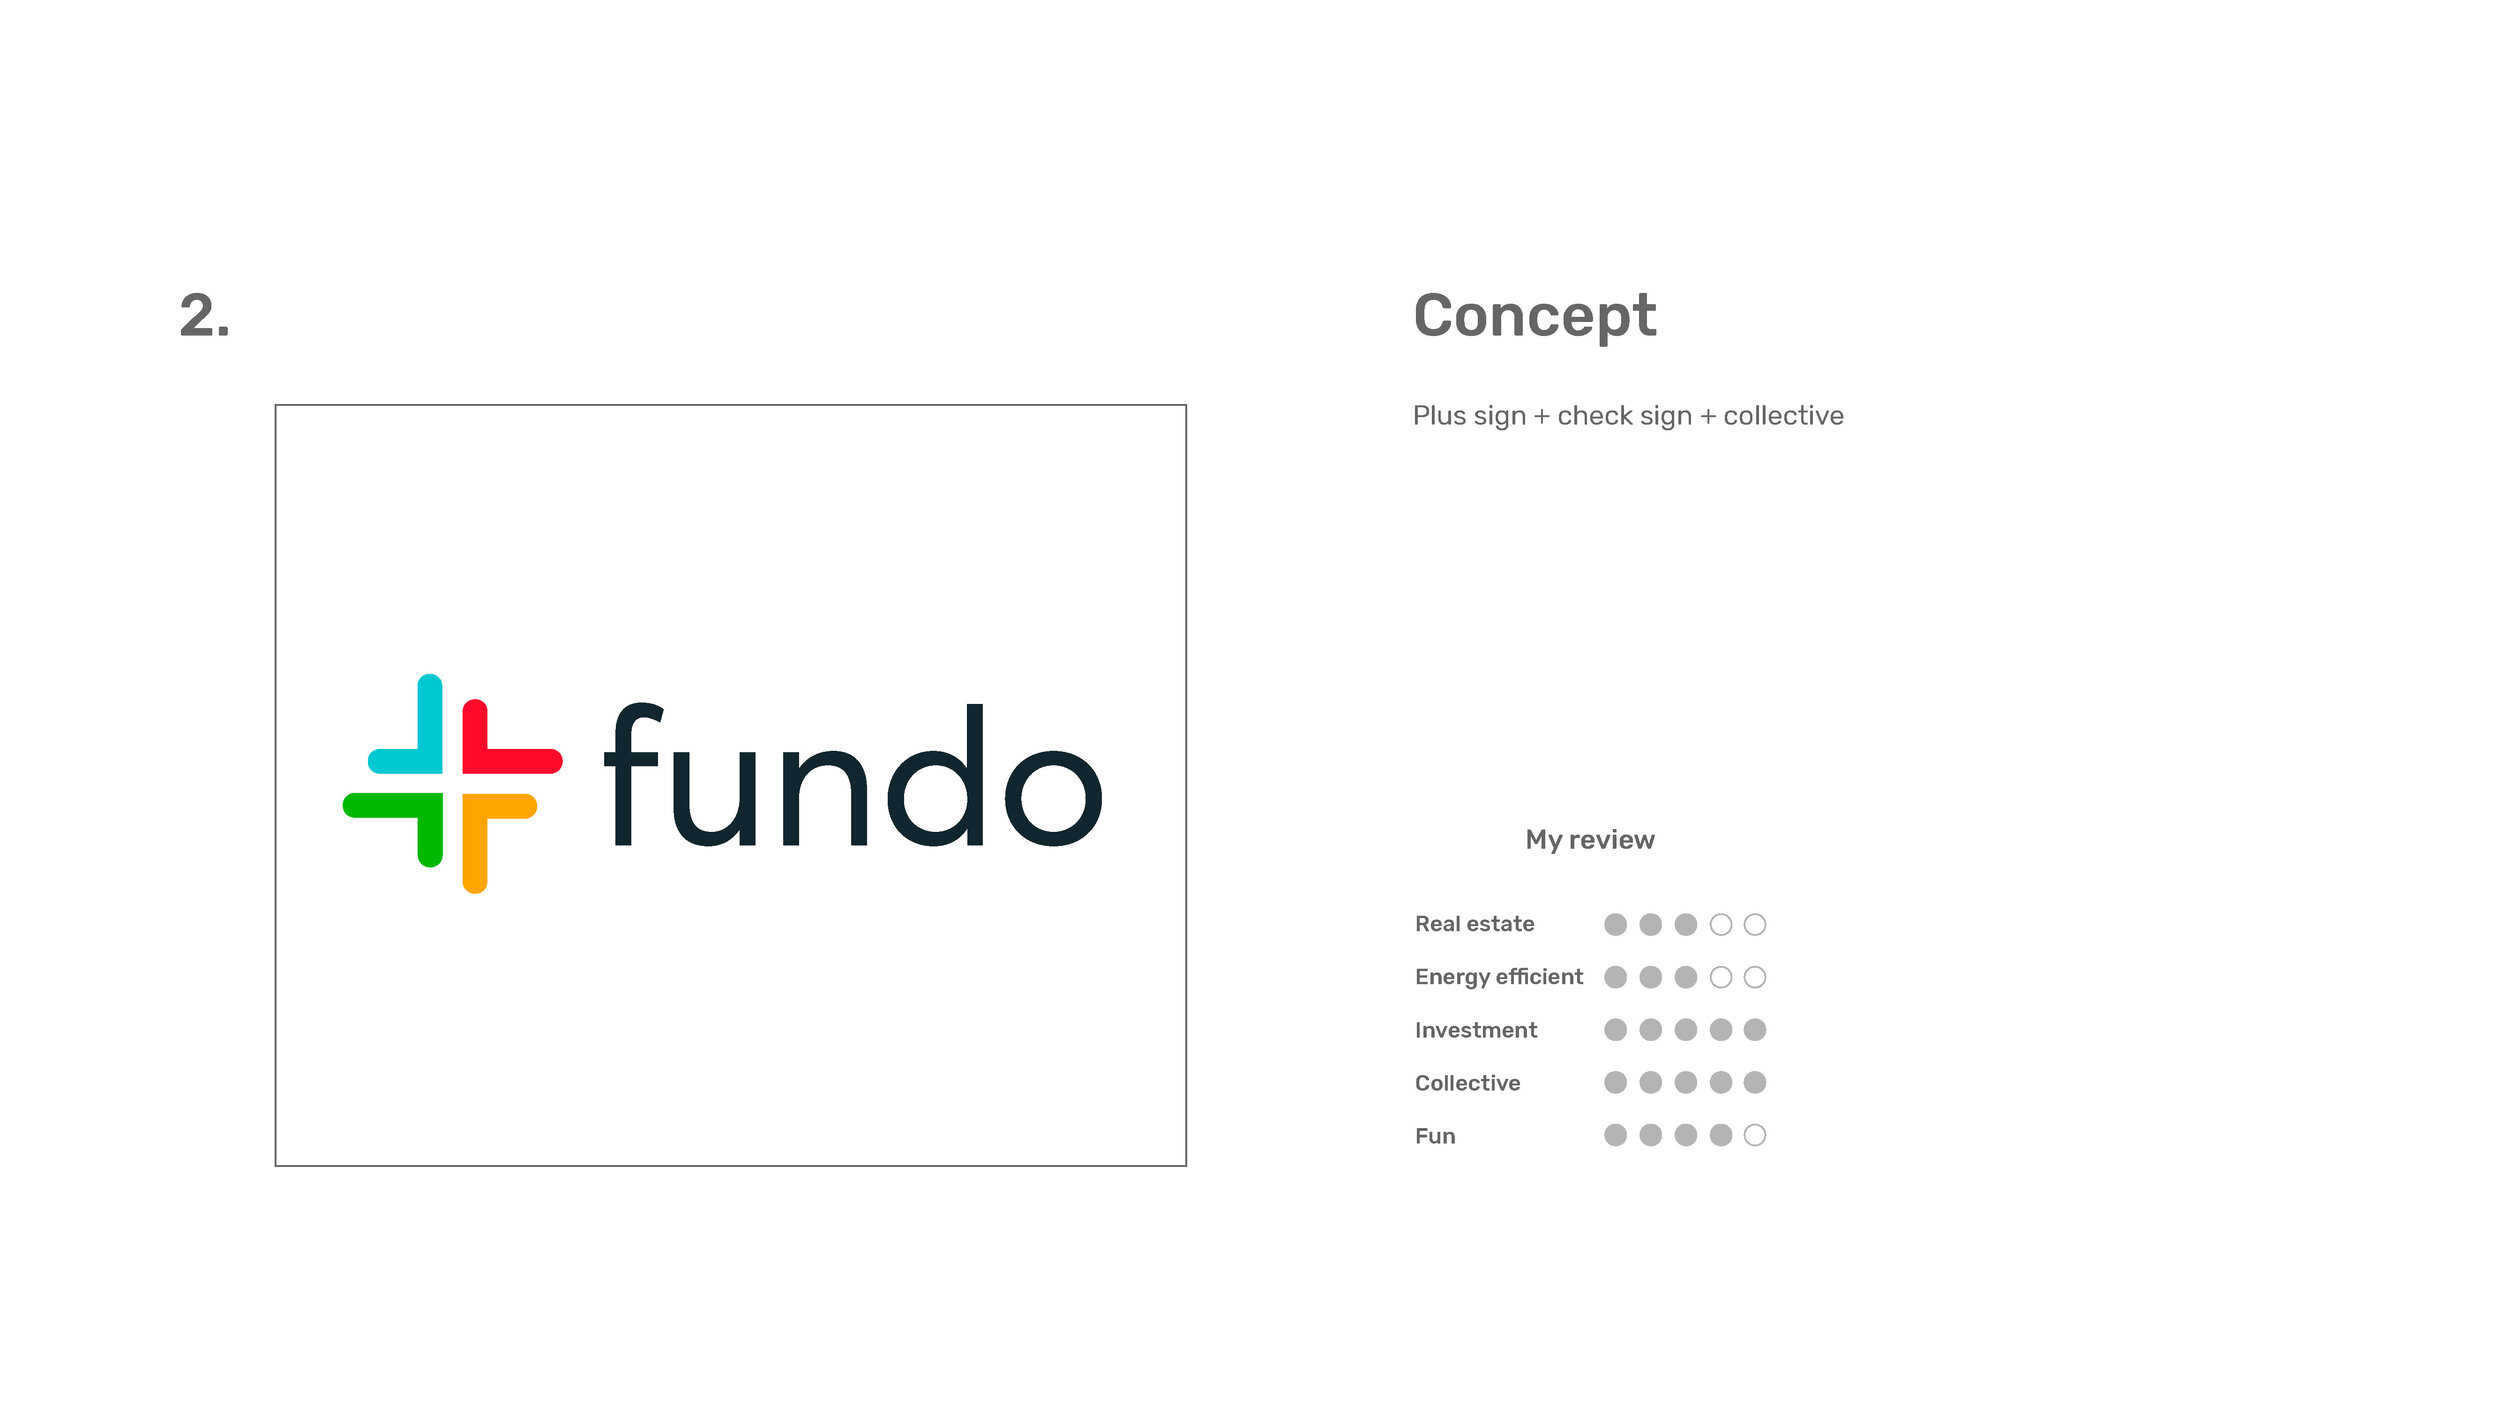 Fundo Logo - Ideas - V1_rfs_Page_05.jpg